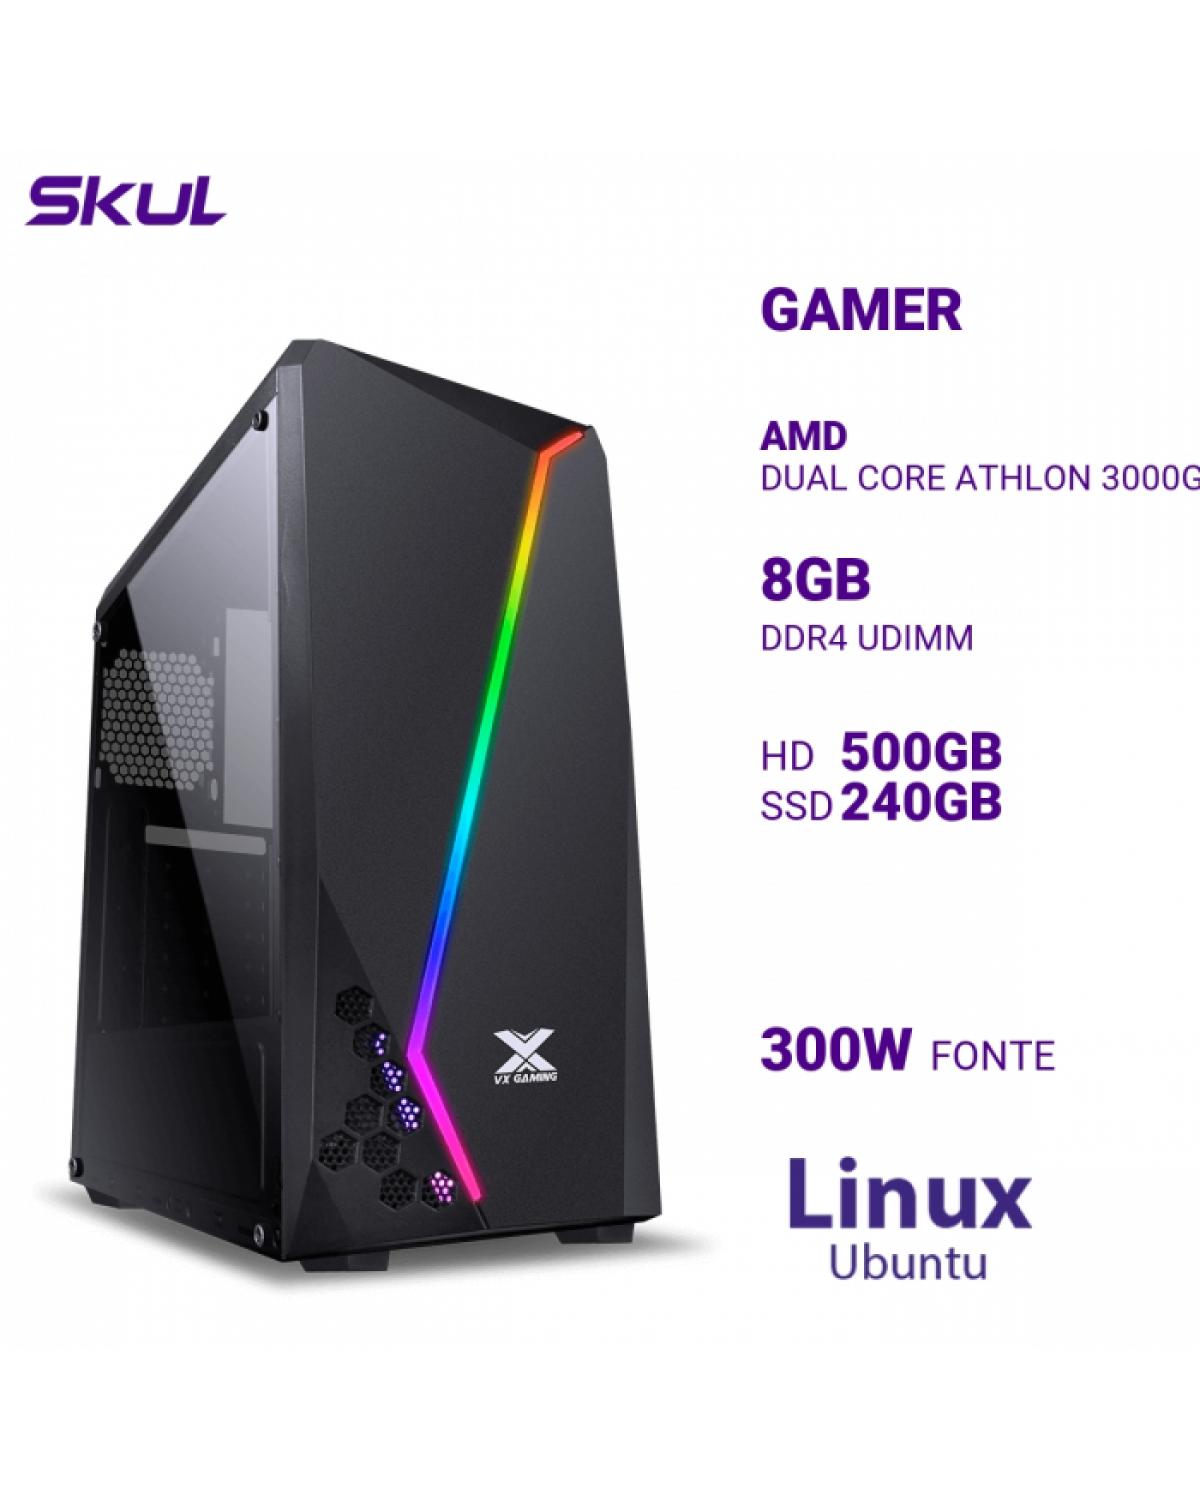 COMPUTADOR GAMER 1000 DUAL CORE ATHLON 3000G 3.50GHZ MEM 8GB DDR4 HD 500GB SSD 240GB FONTE 300W LINUX